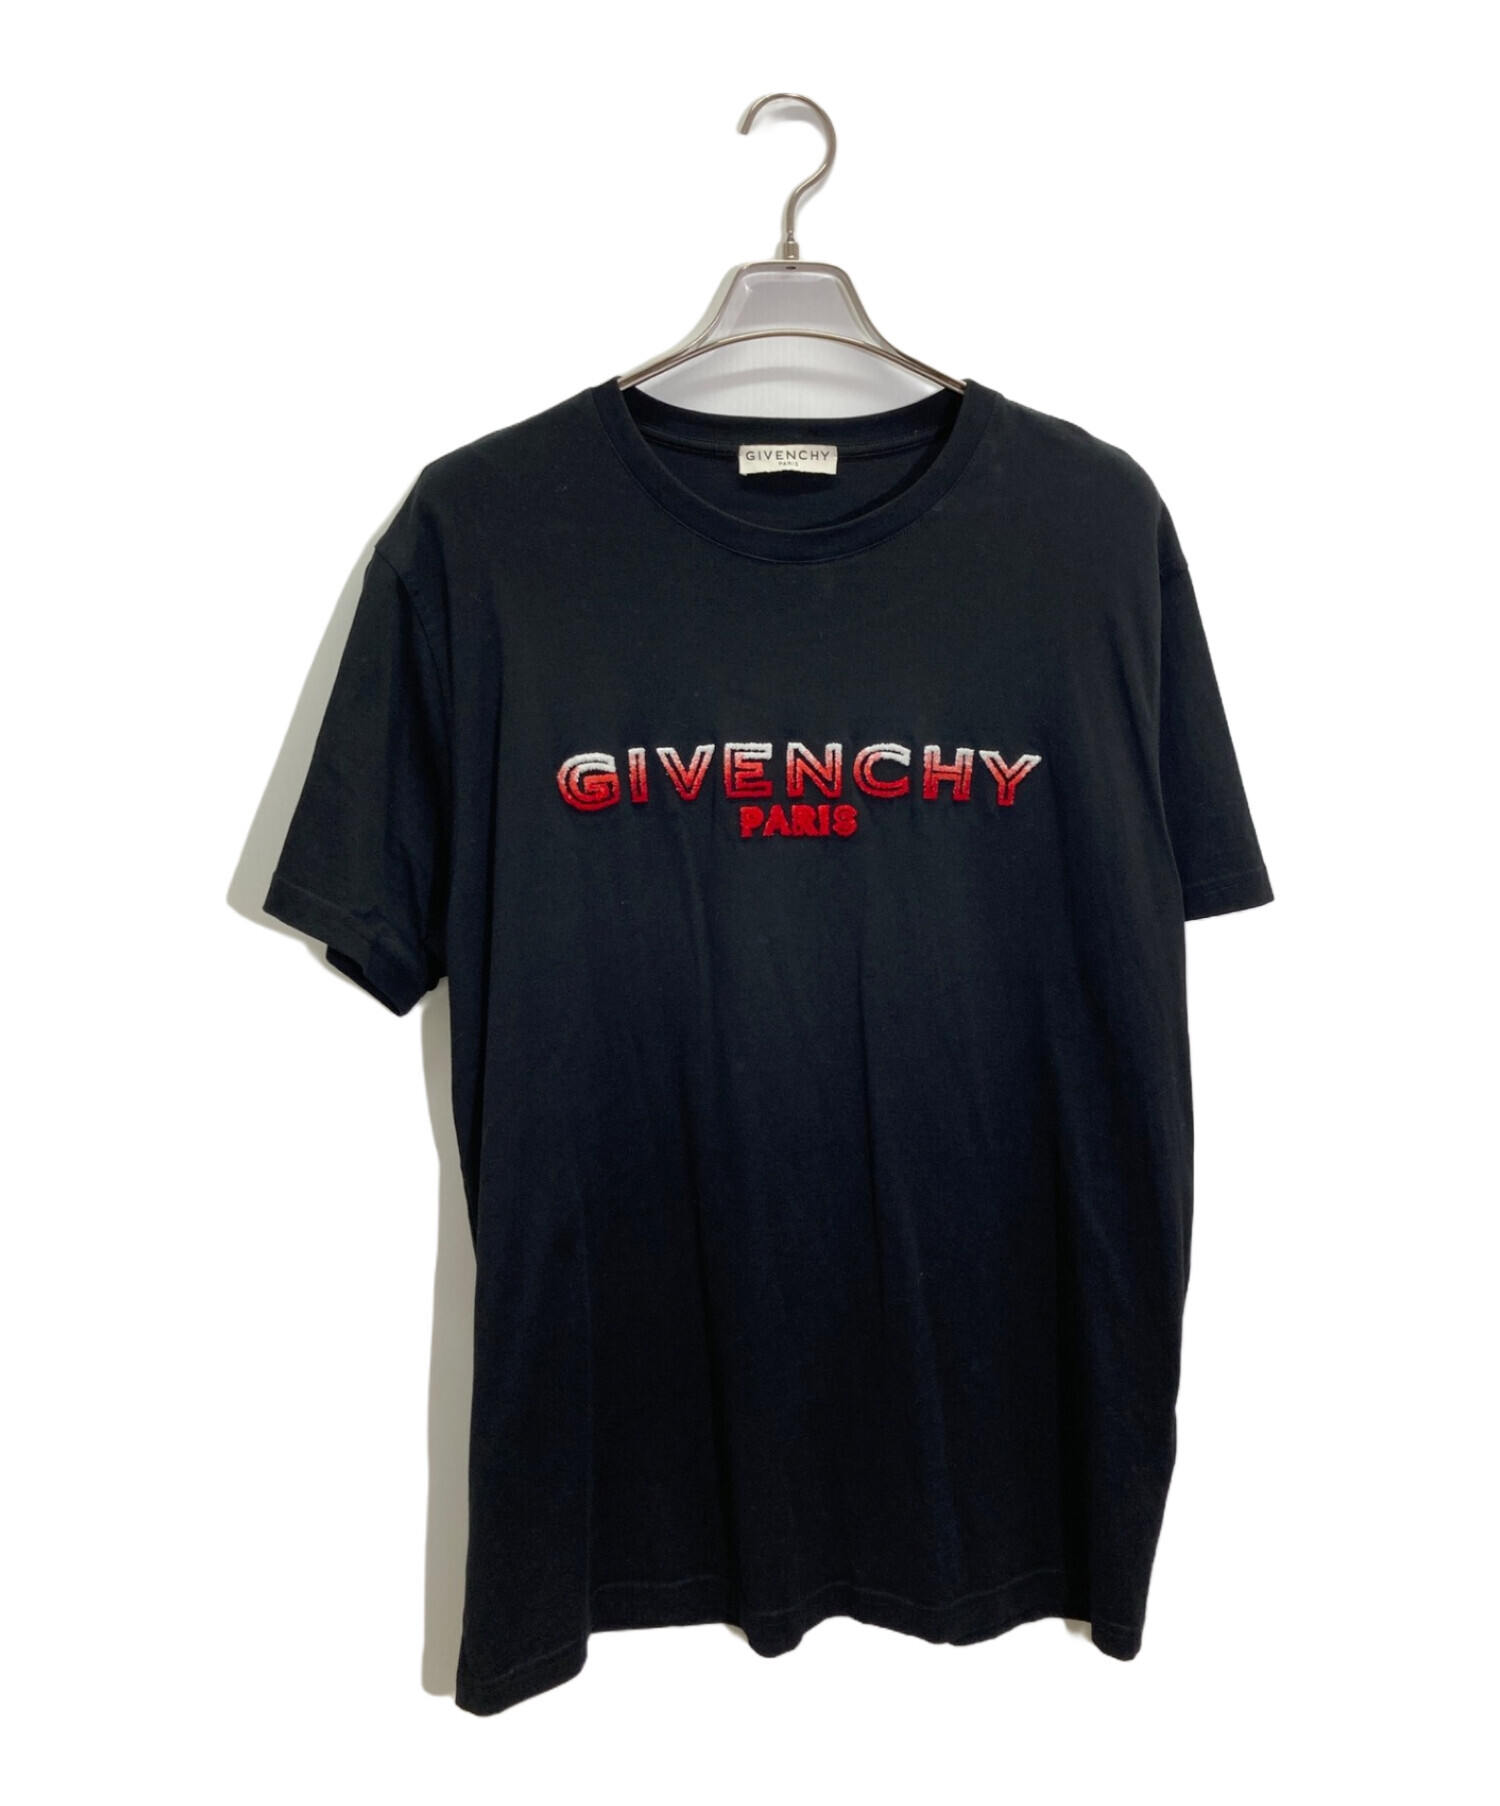 GIVENCHY (ジバンシィ) ロゴカットソー ブラック サイズ:M